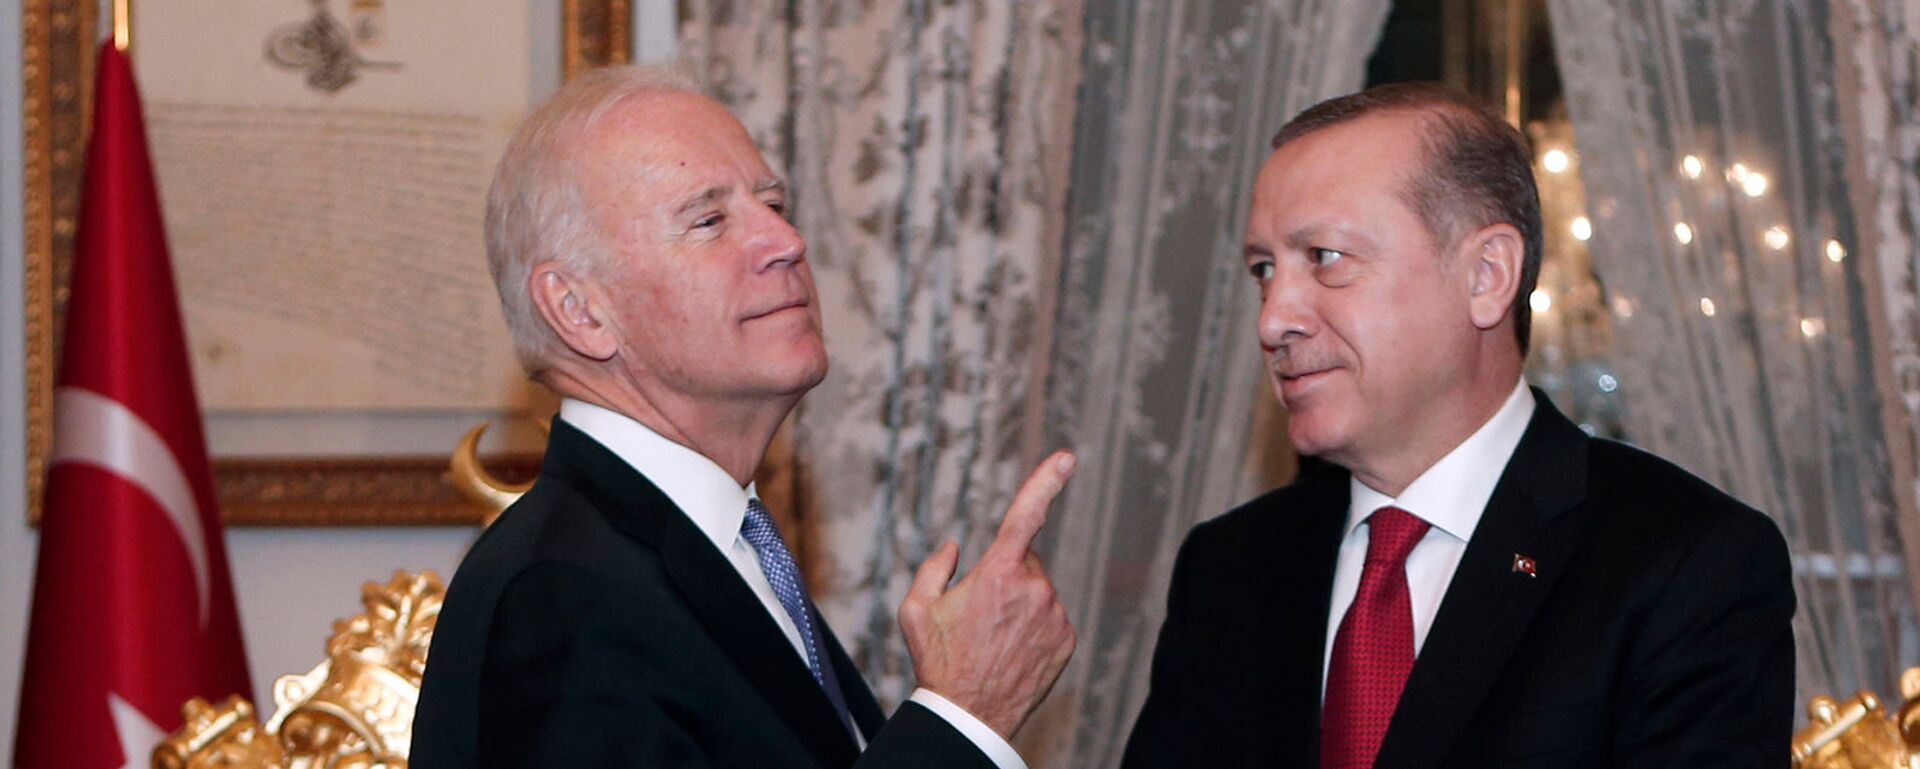 Беседа вице-президента США Джо Байдена с президентом Турции Реджепом Тайипом Эрдоганом после их встречи во Дворце Йылдыз Мабейн (23 января 2016). Стамбул - Sputnik Армения, 1920, 27.04.2021